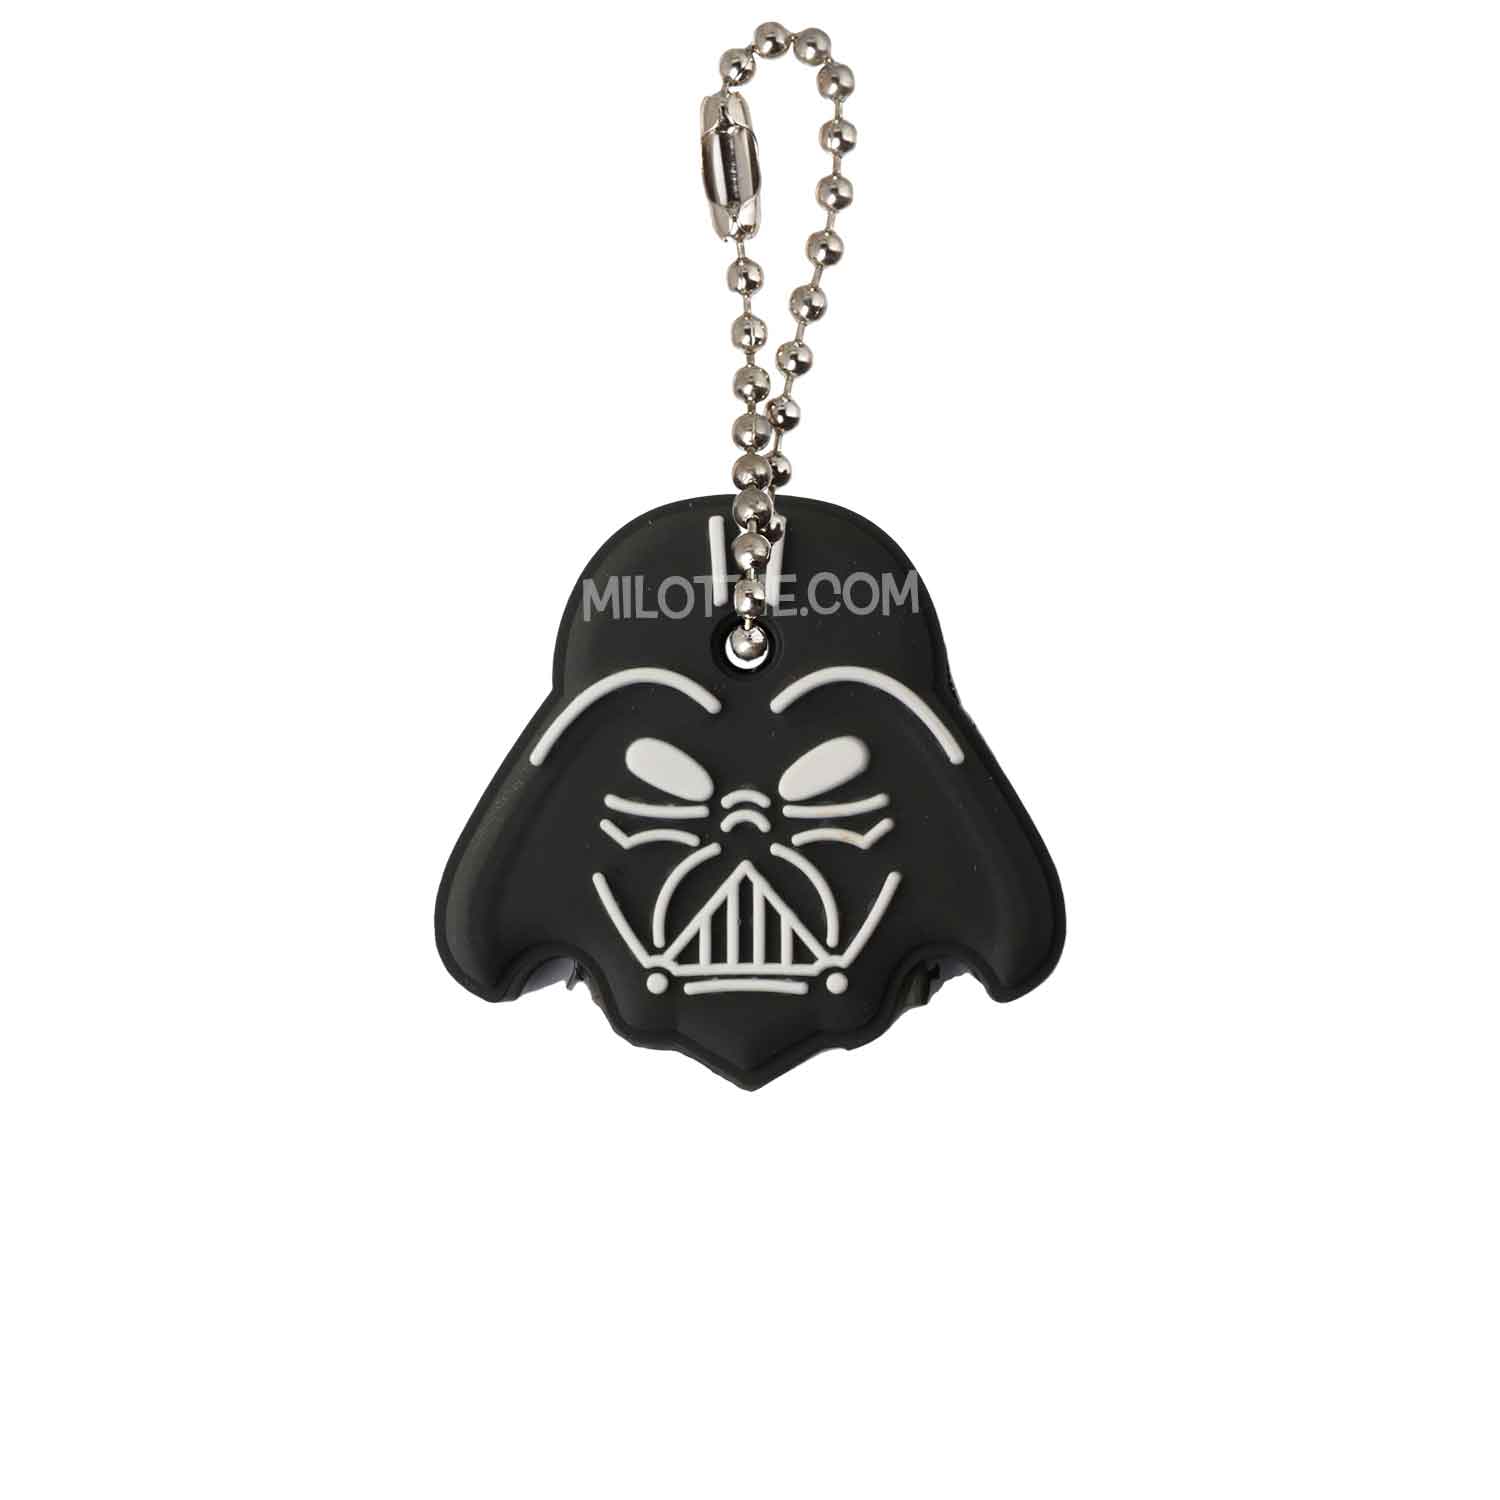 dark Vader key cap - Milottie